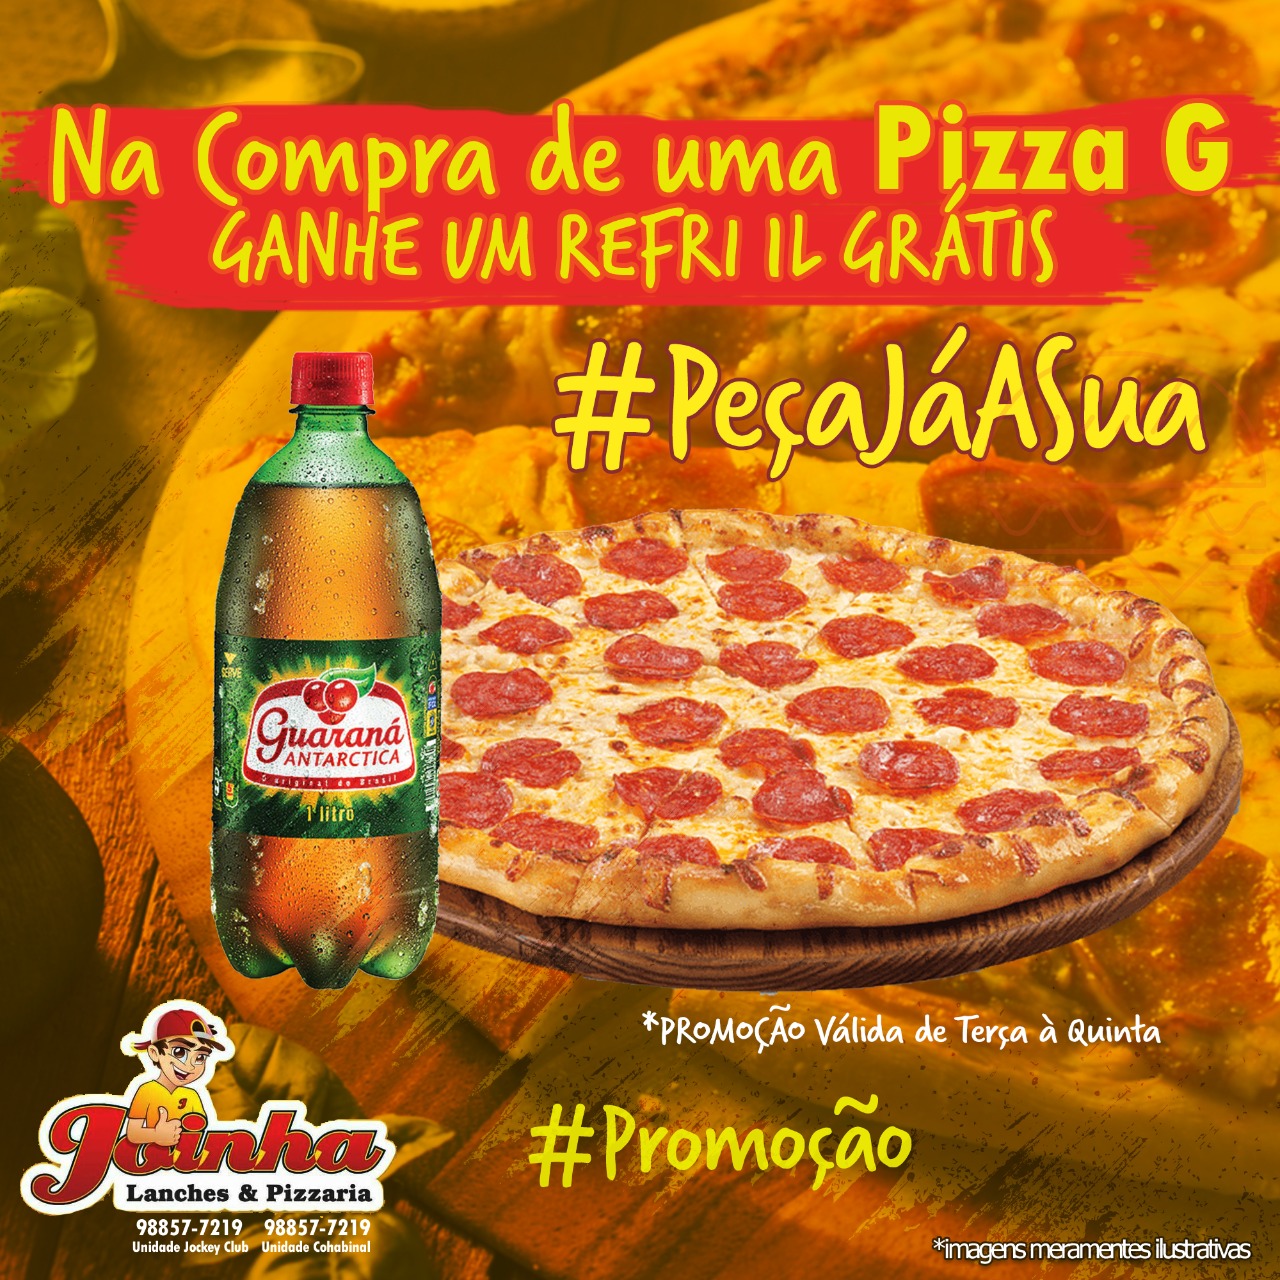 Promoção: Promo 1 Pizza G e Ganhe 1 Refri 1l